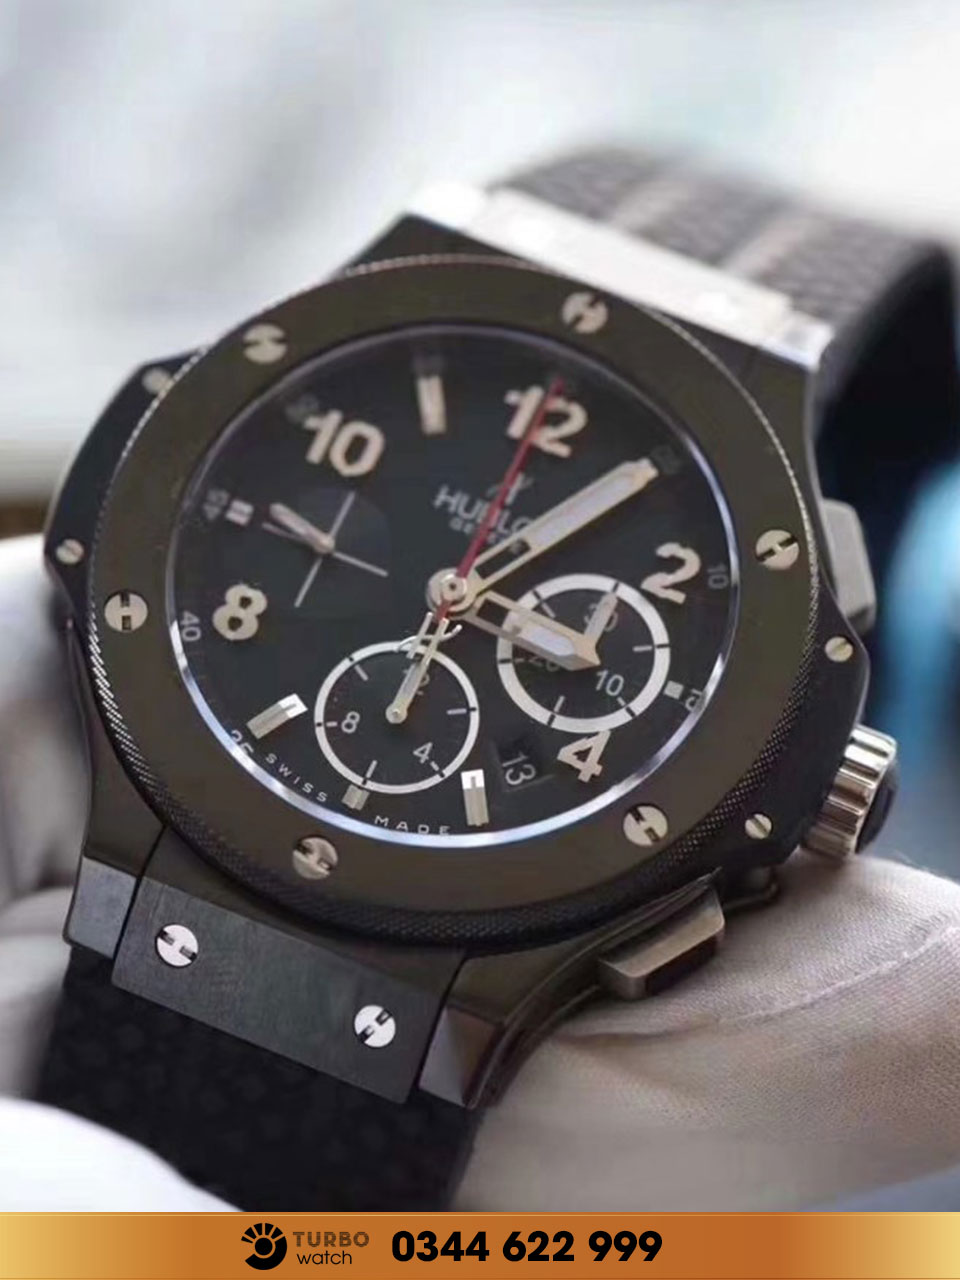 Đánh giá chi tiết về đồng hồ Replica Hublot 1:1 Big Bang Evolution Black Magic Watch